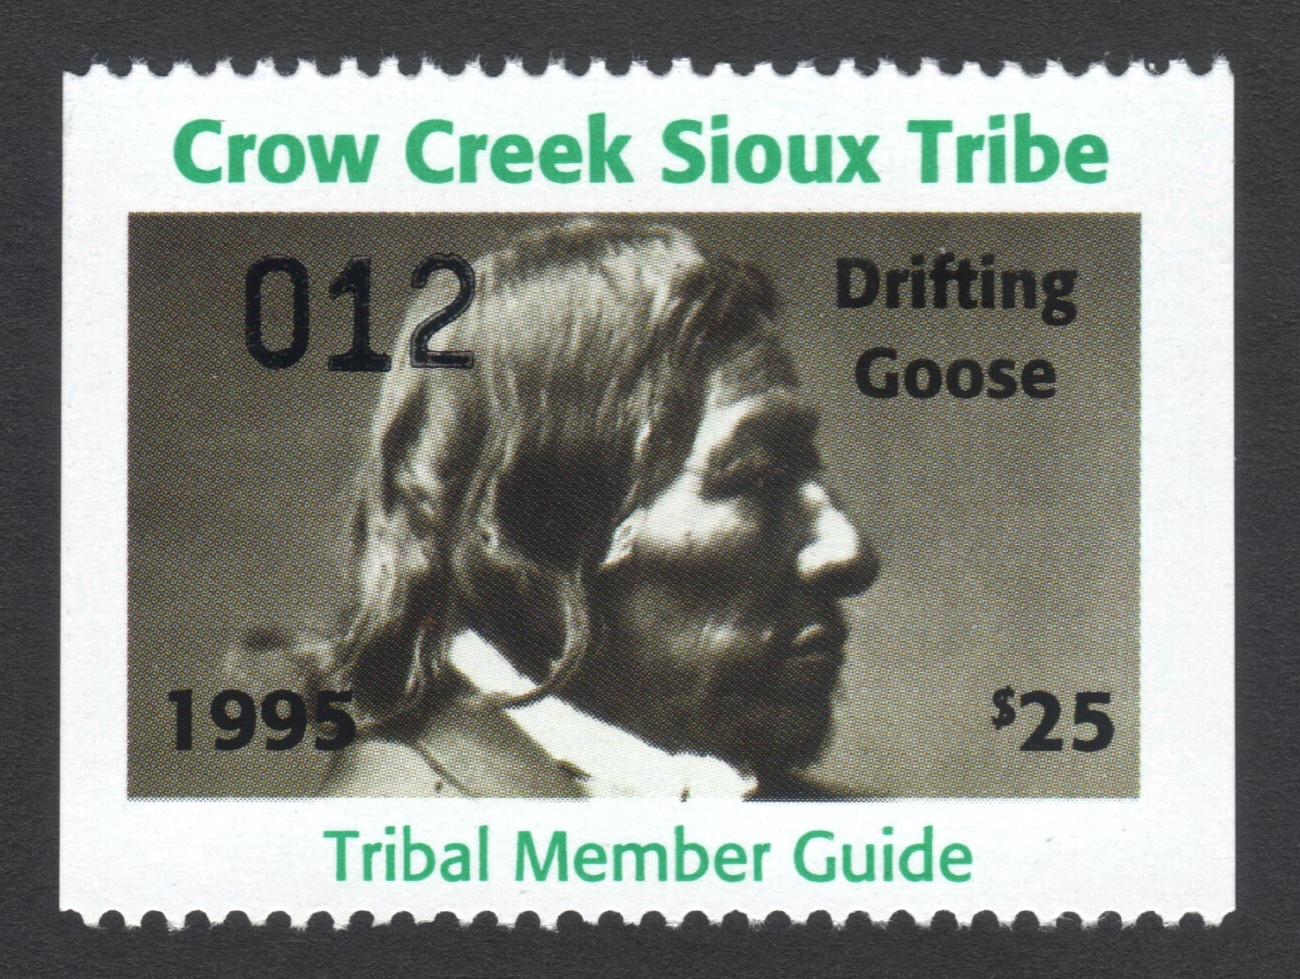 1995 Crow Creek Tribal Member Guide